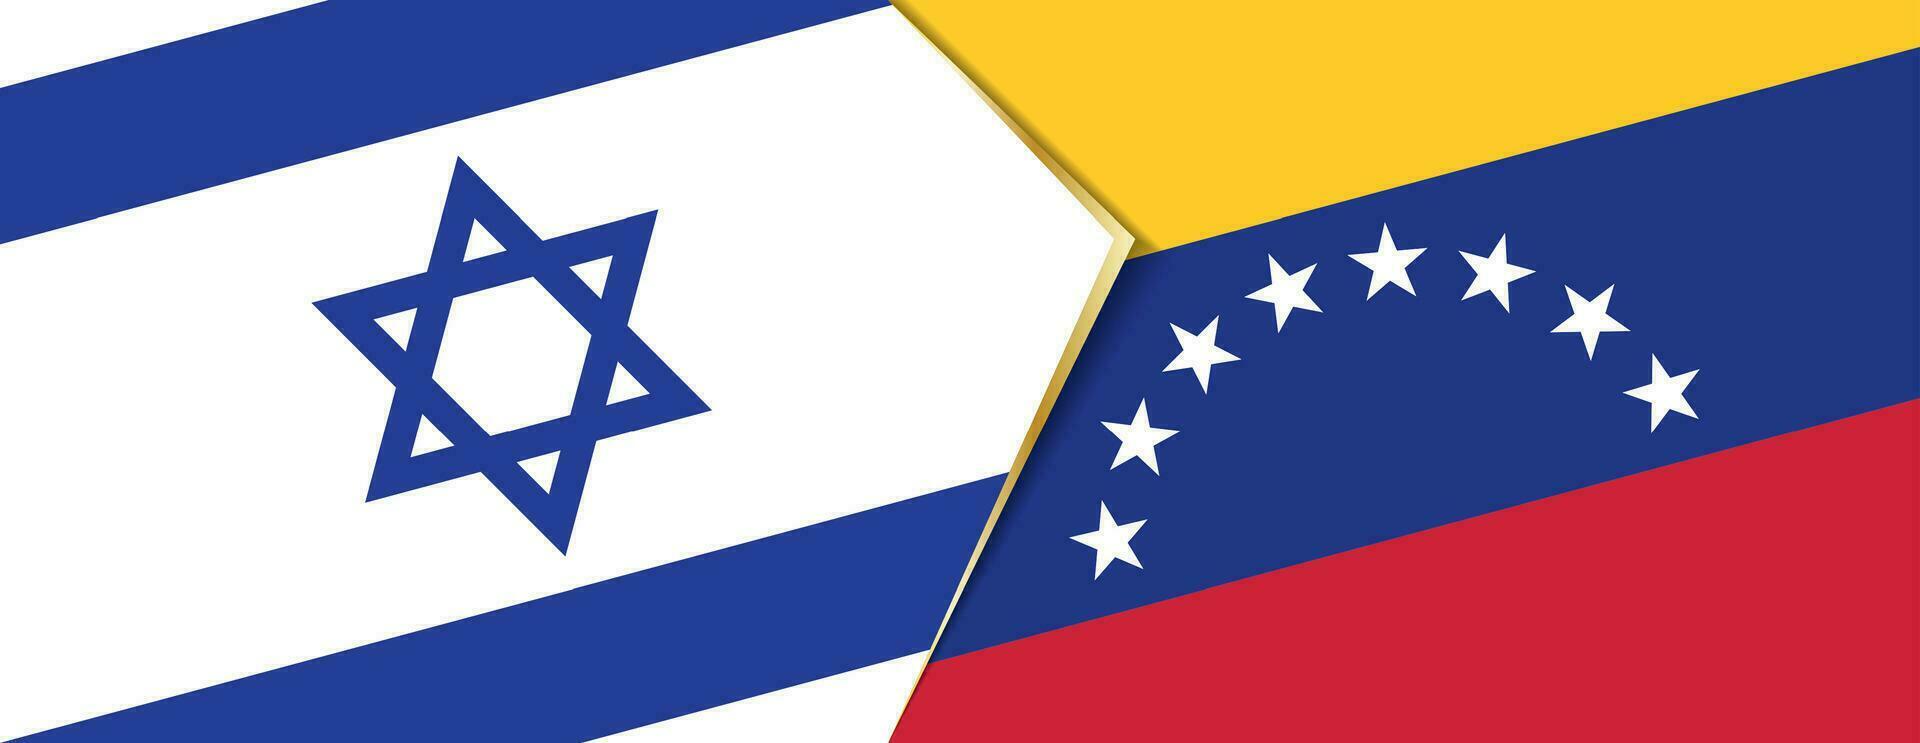 Israël en Venezuela vlaggen, twee vector vlaggen.